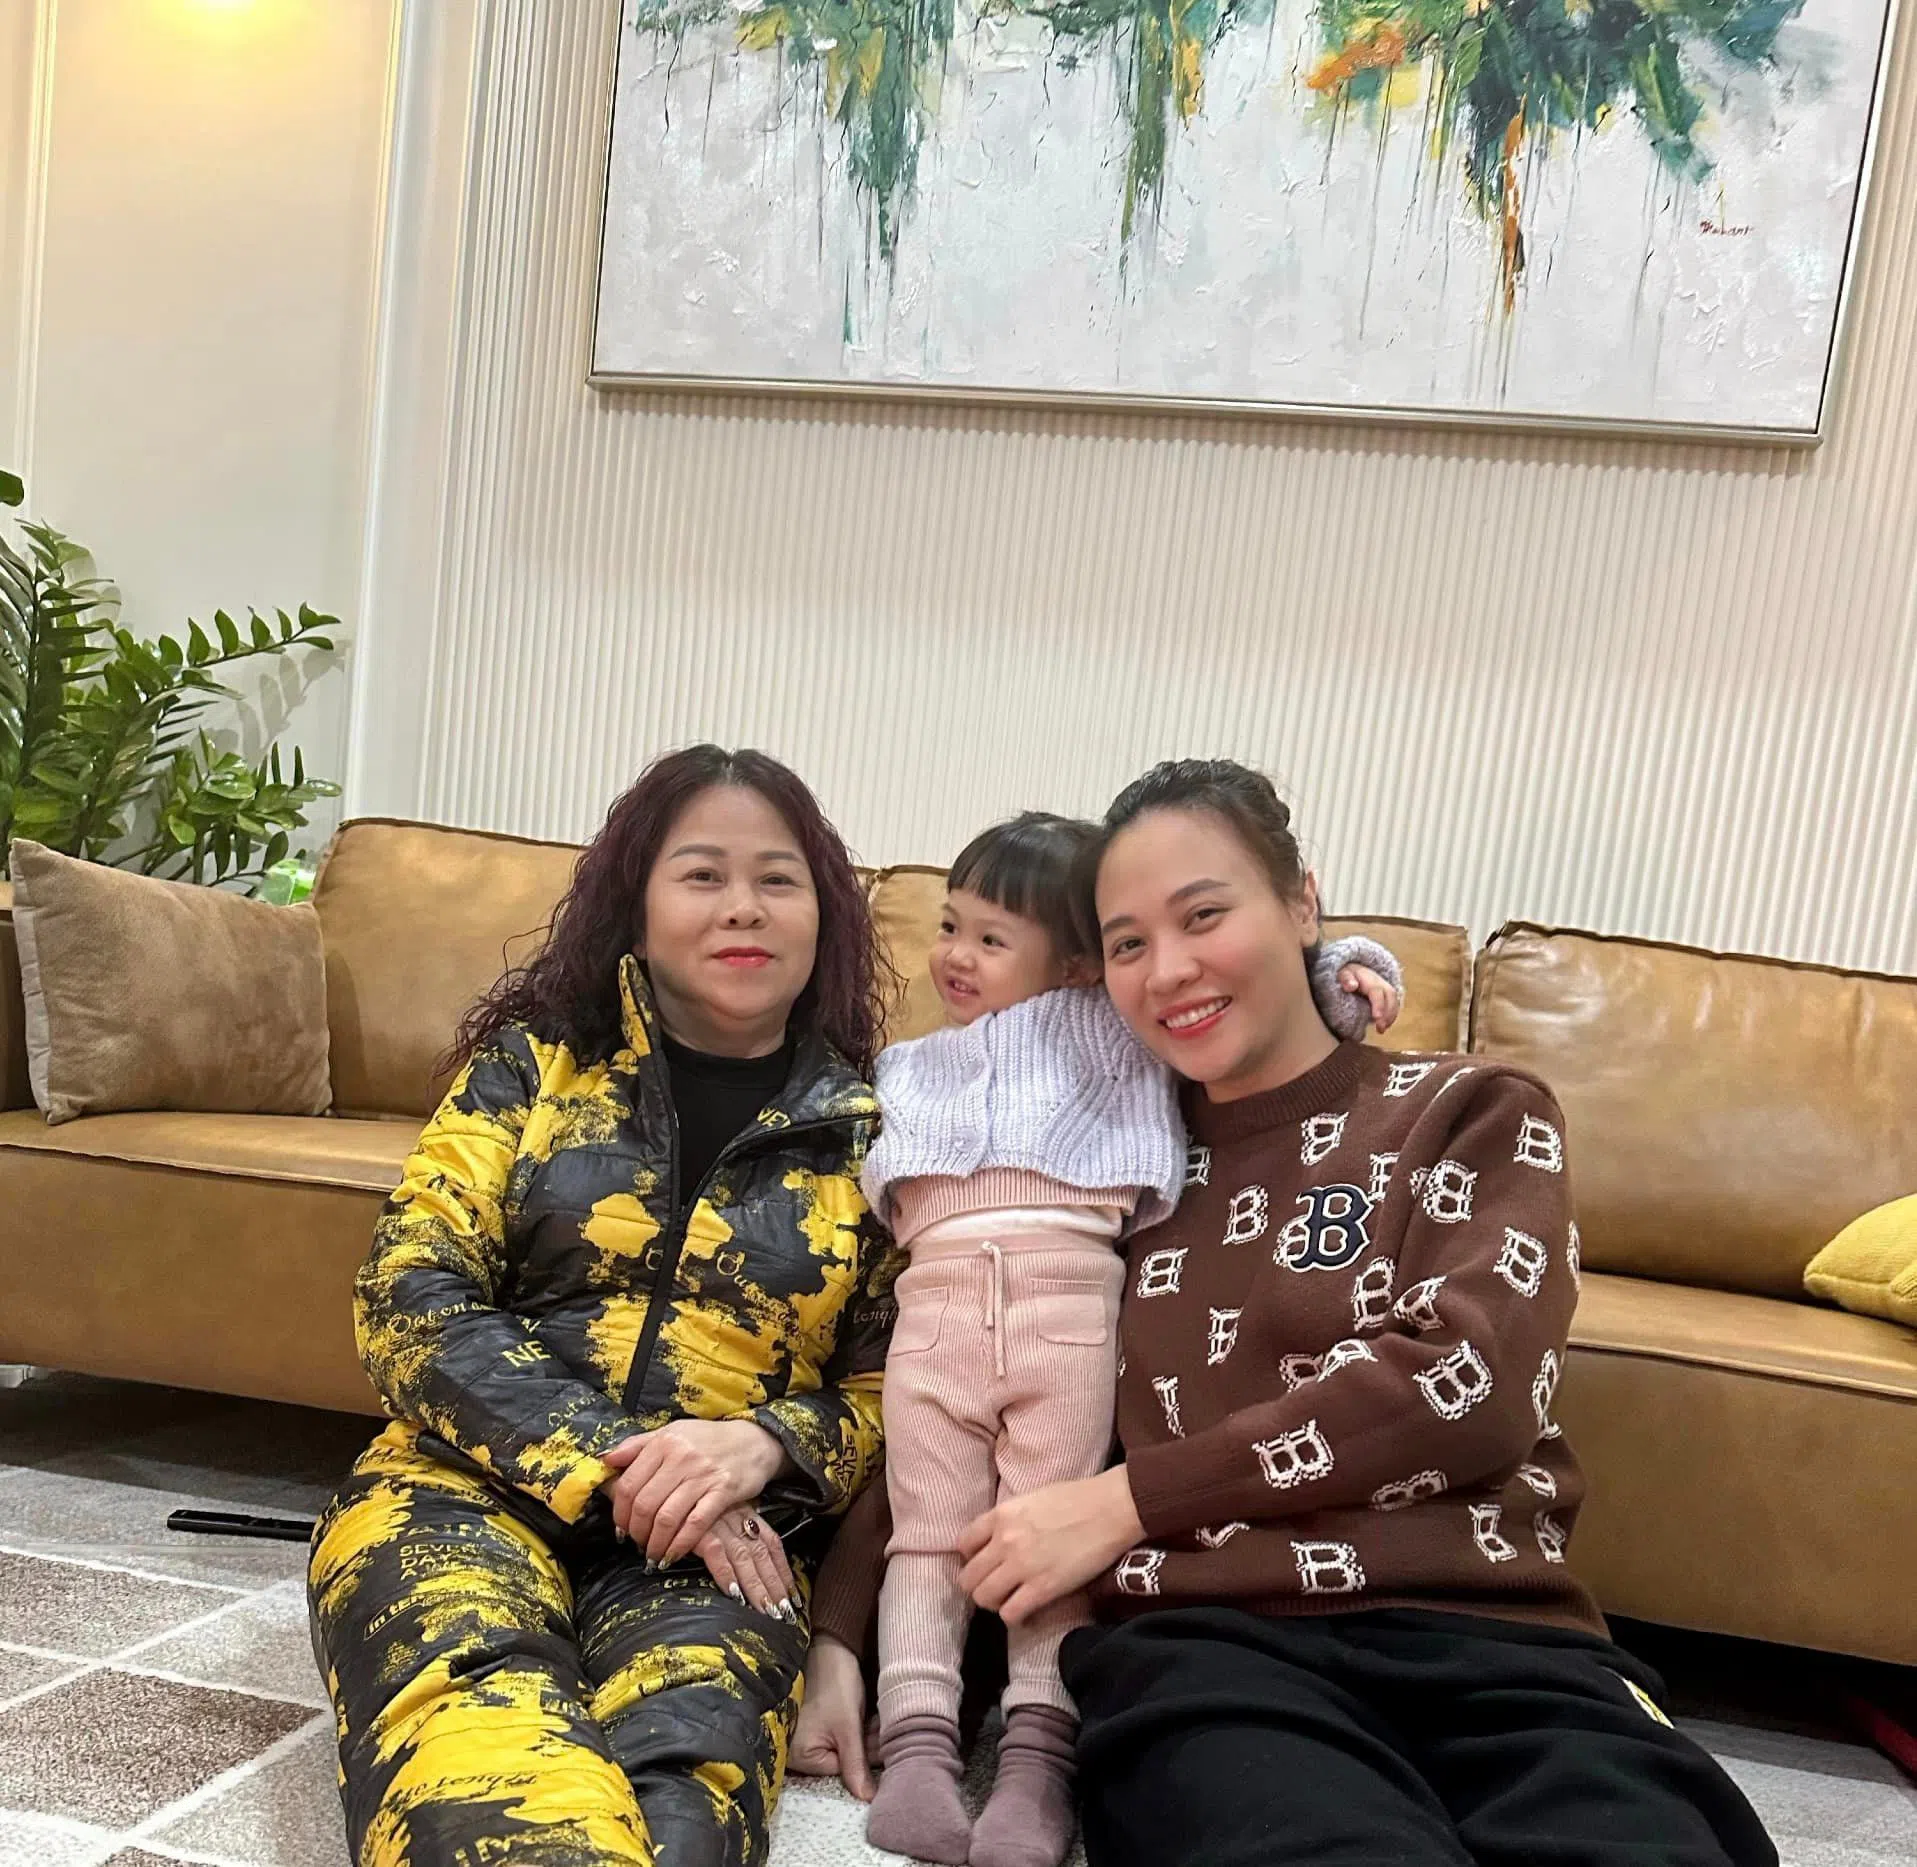 Đàm Thu Trang khoe ảnh 3 thế hệ, mẹ vợ Cường Đôla gây chú ý đặc biệt